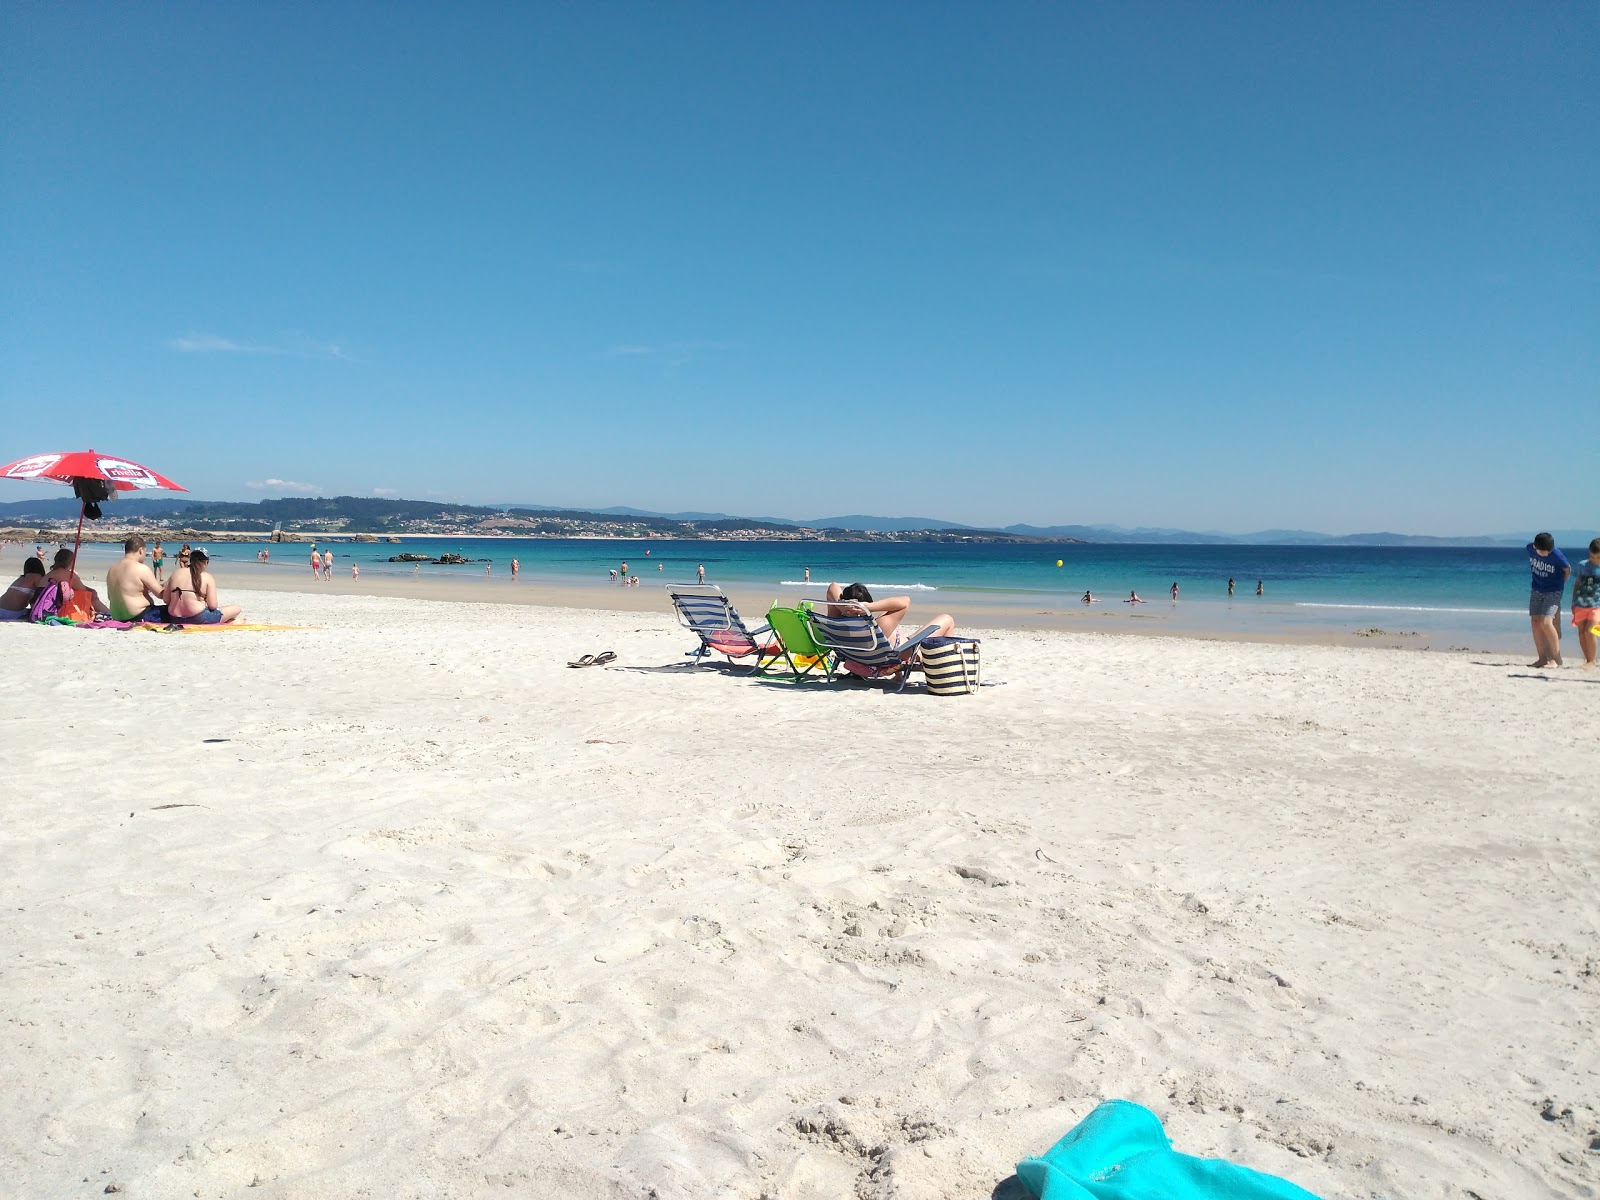 Fotografie cu Area da Cruz beach - locul popular printre cunoscătorii de relaxare